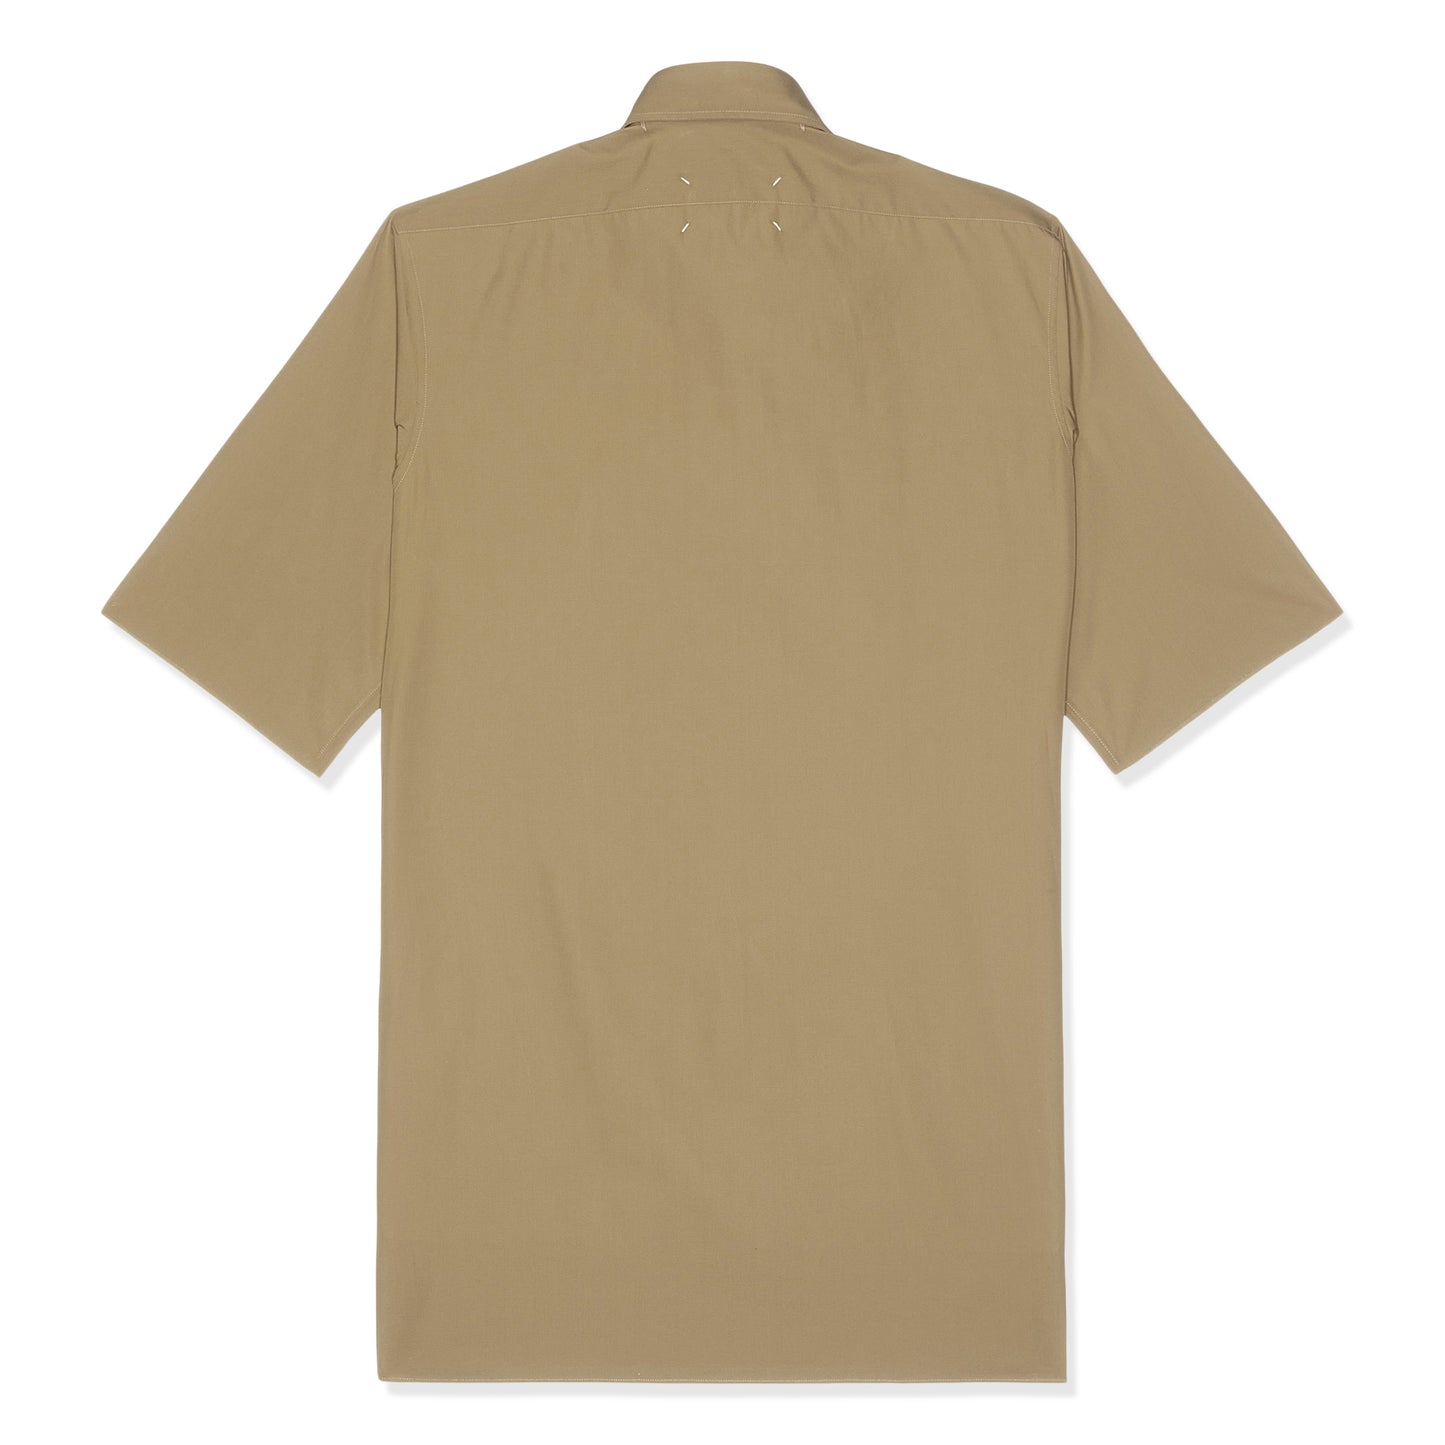 Maison Margiela Short Sleeved Shirt (Camel)